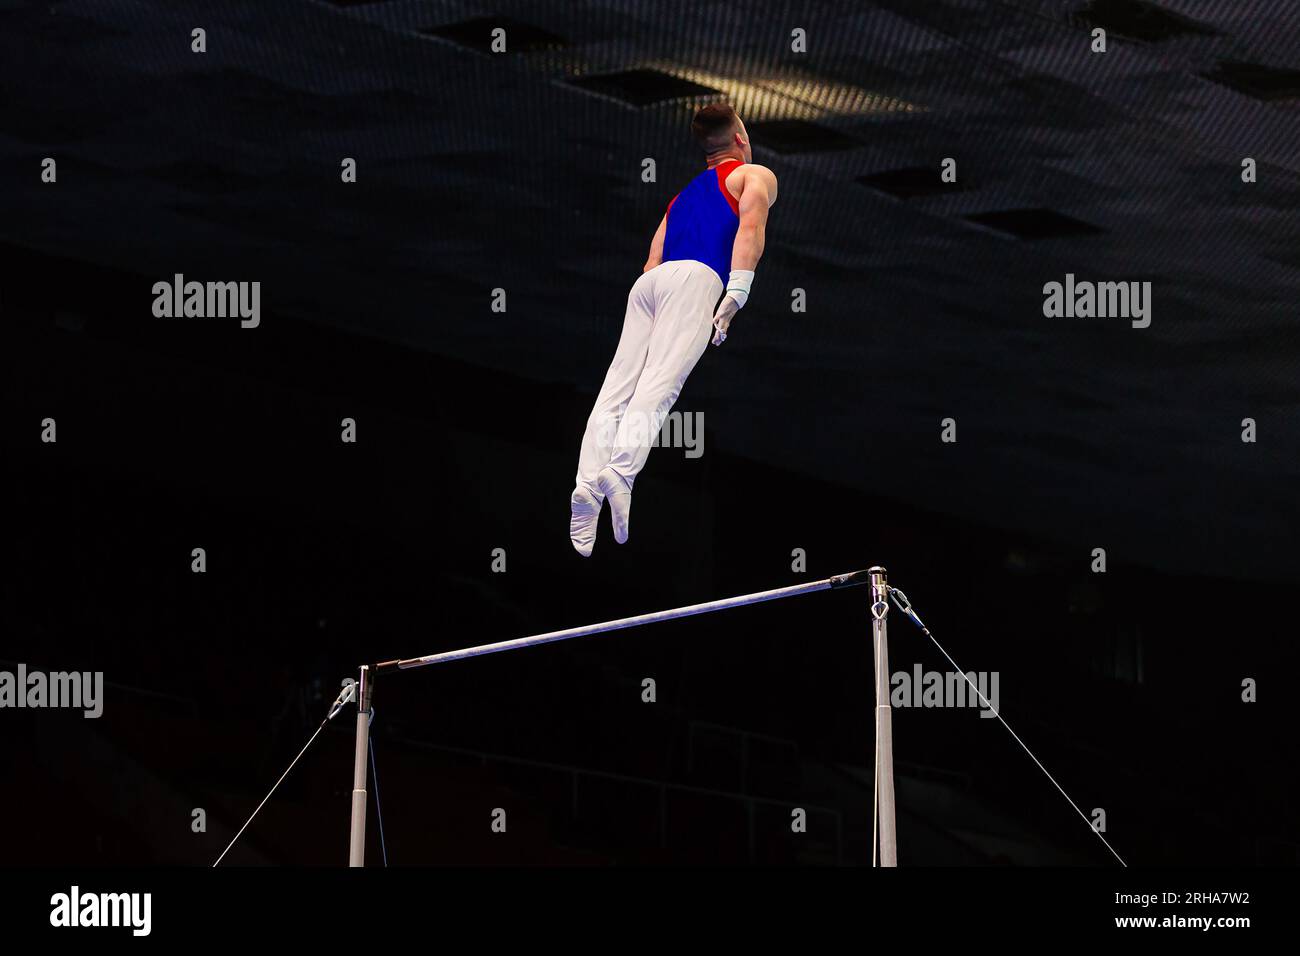 gymnastique exercice barre horizontale dans la gymnastique de championnat, concept d'homme volant Banque D'Images